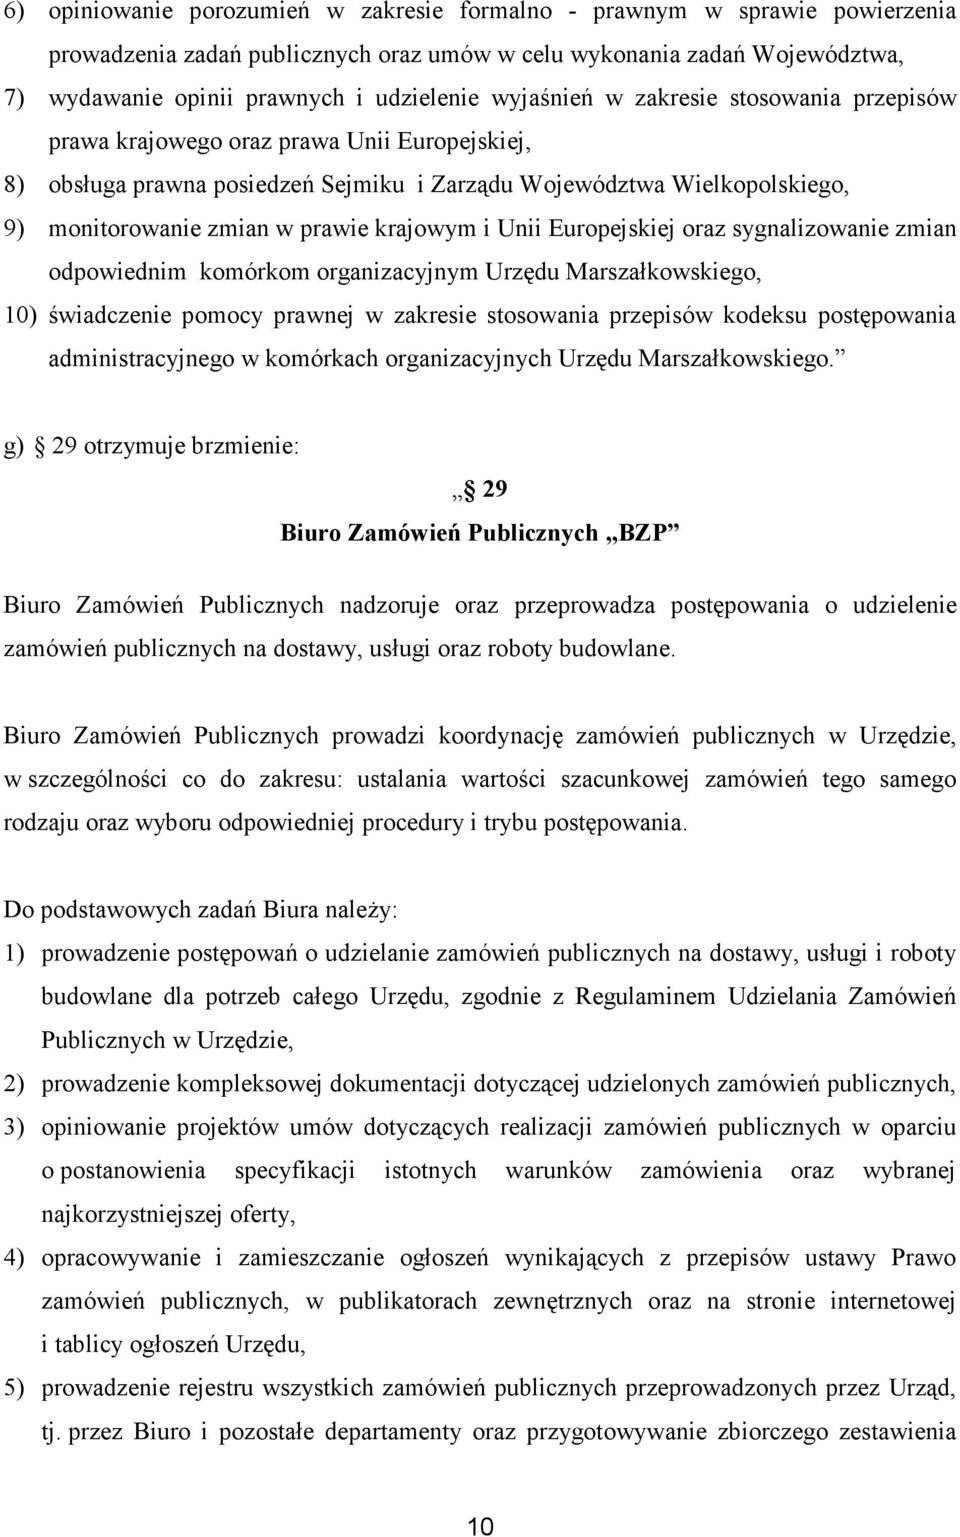 krajowym i Unii Europejskiej oraz sygnalizowanie zmian odpowiednim komórkom organizacyjnym Urzędu Marszałkowskiego, 10) świadczenie pomocy prawnej w zakresie stosowania przepisów kodeksu postępowania